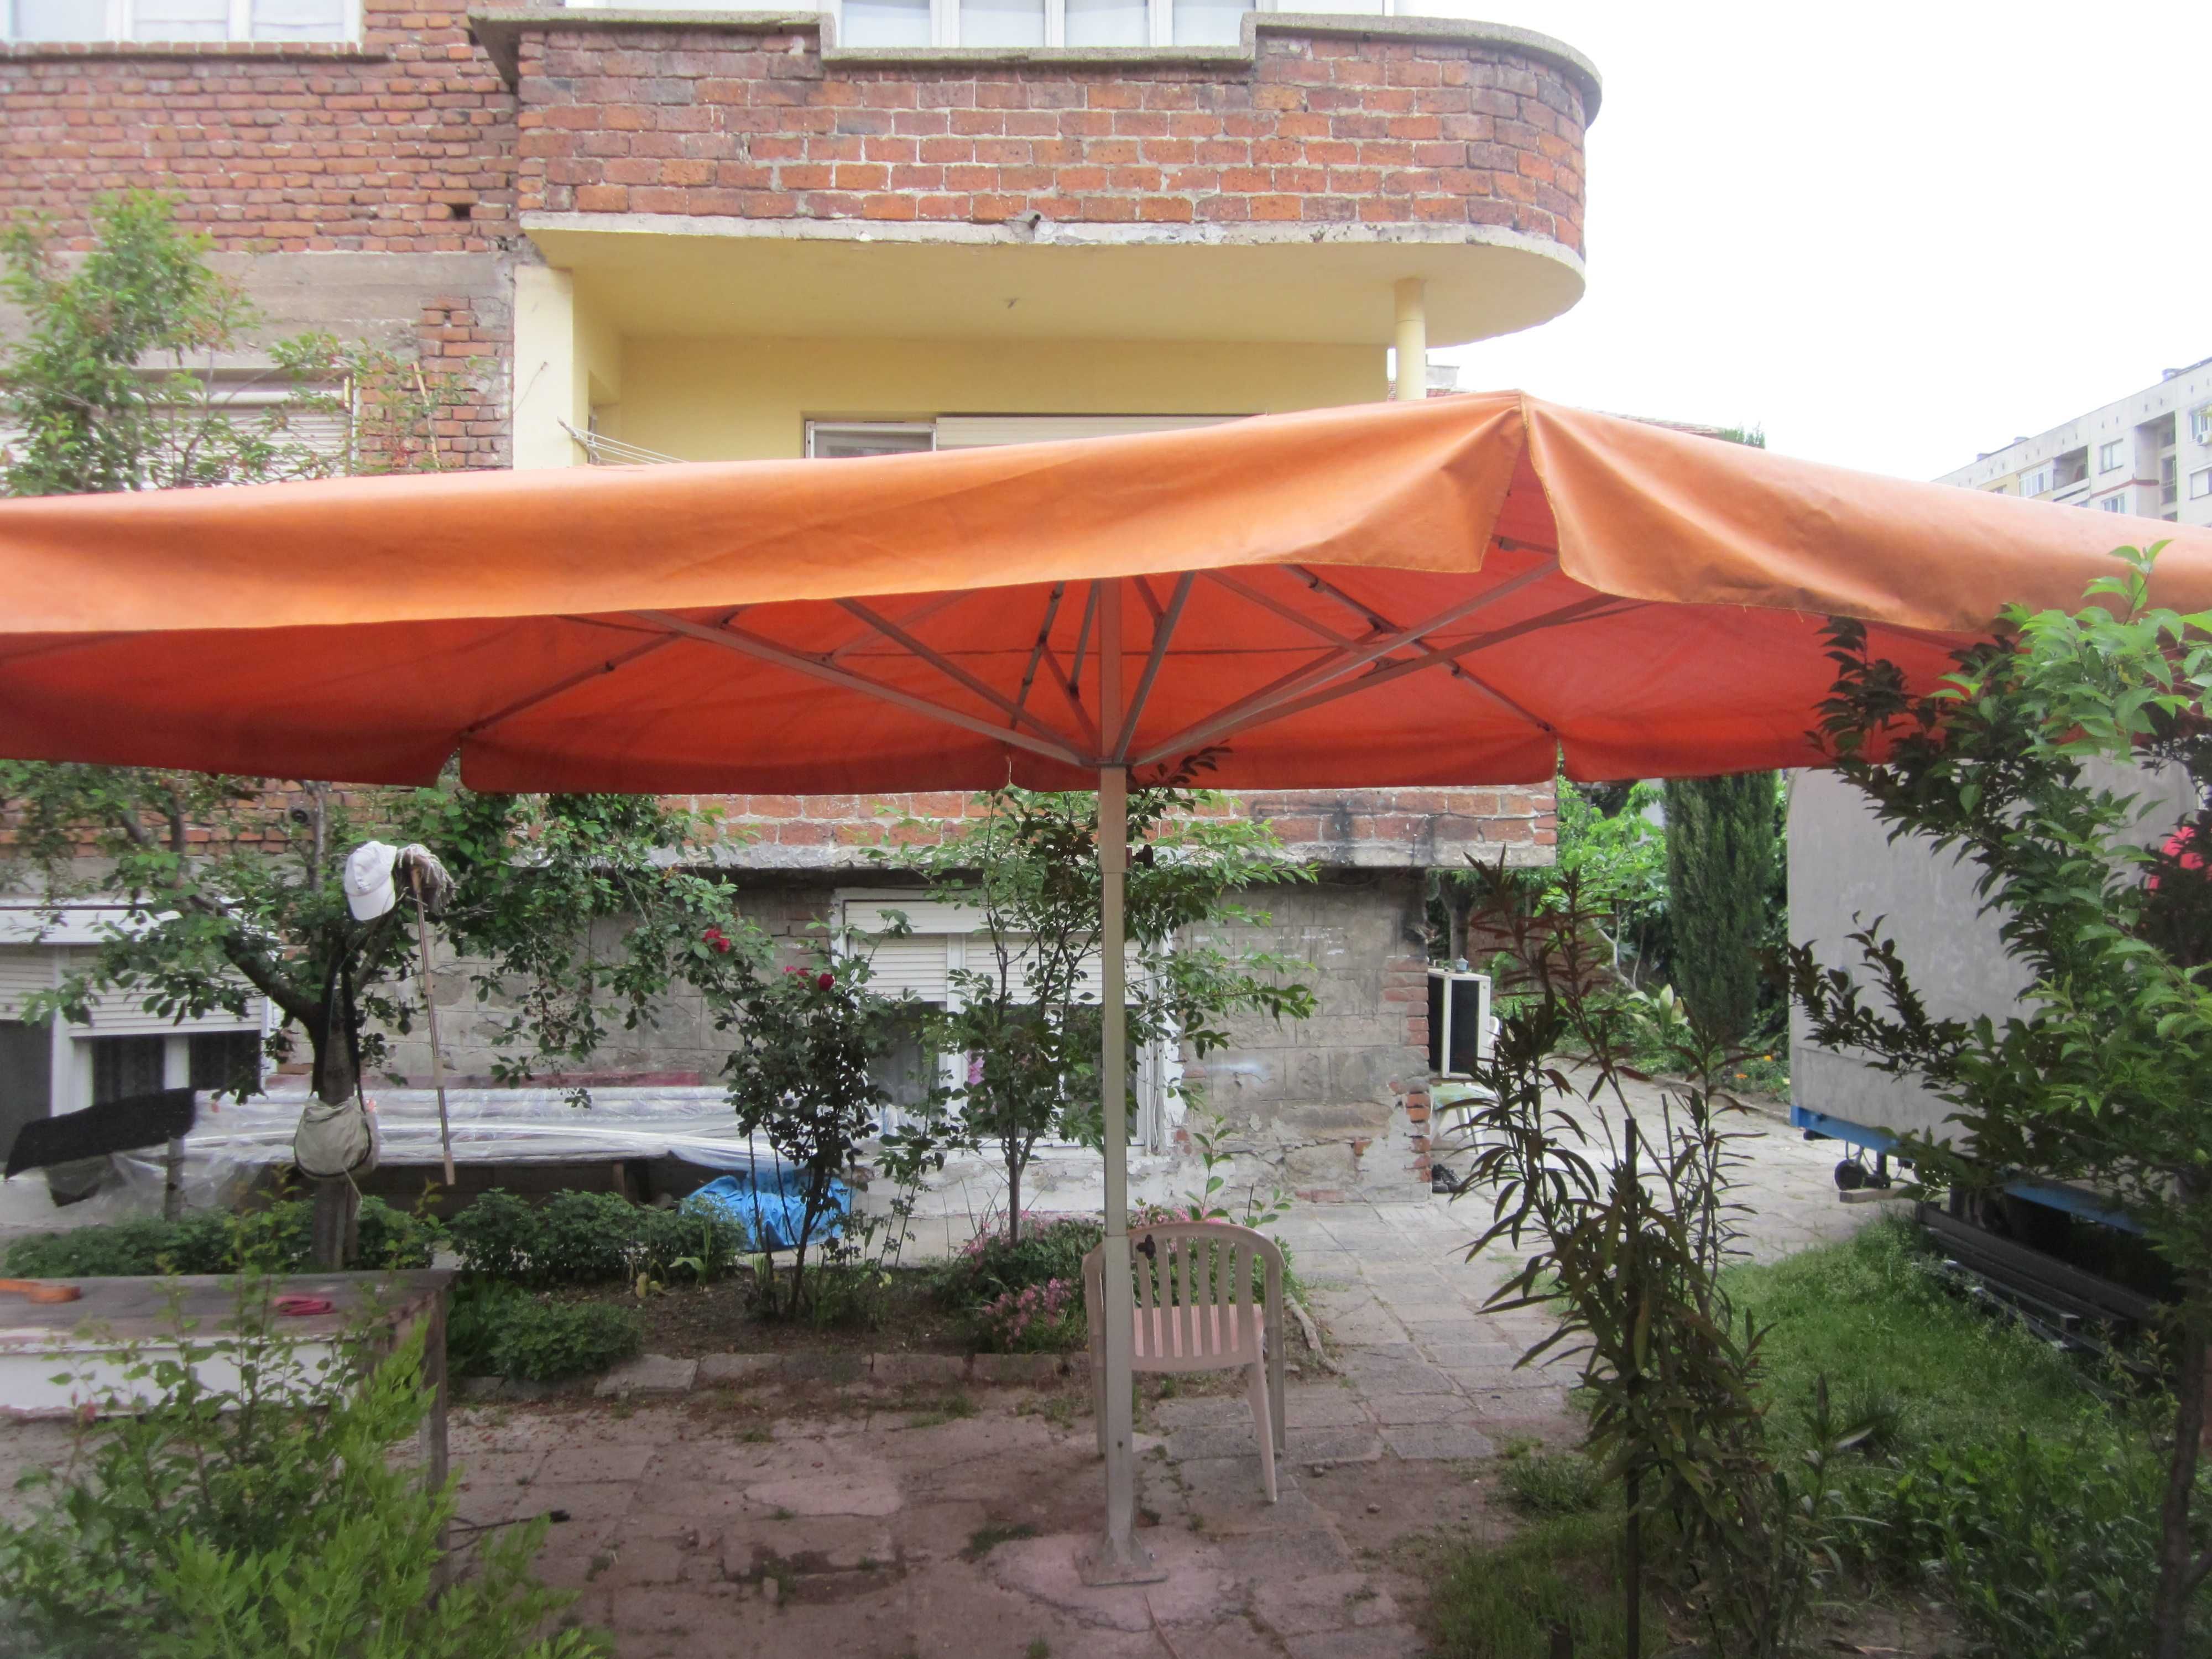 Швейцарски ИМПРЕГНИРАН чадър Glatz- 540 см диаметър